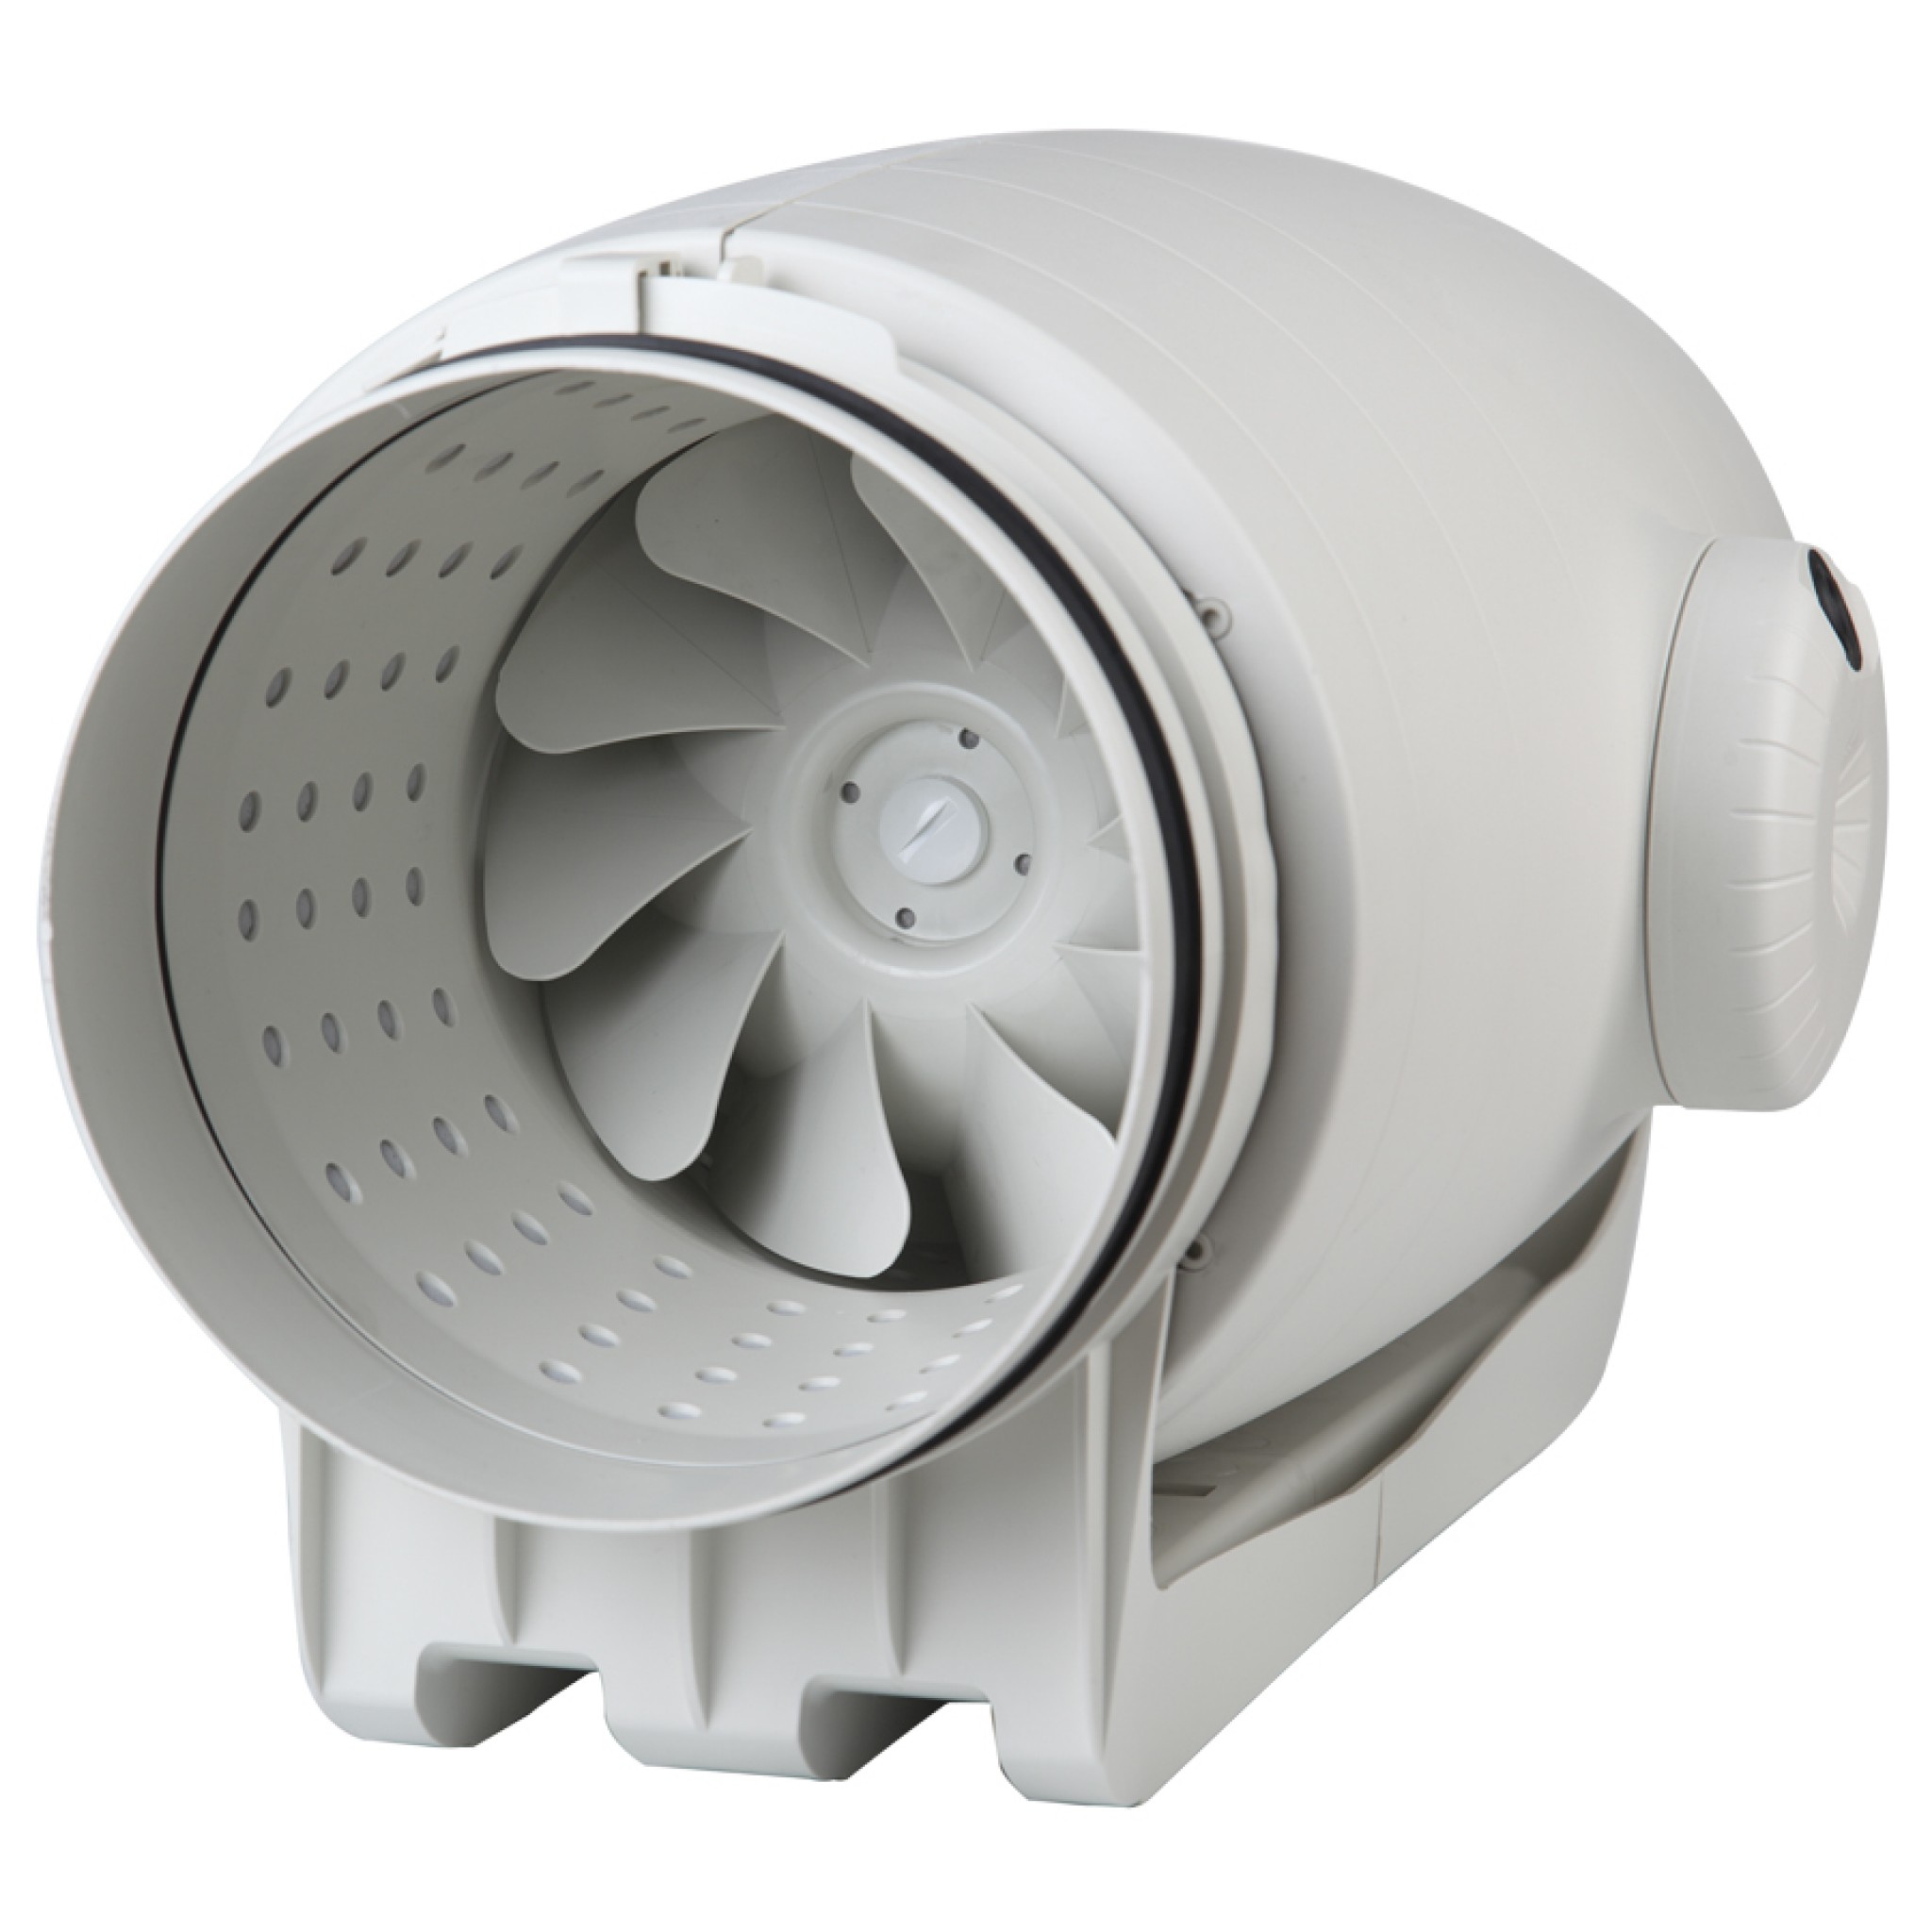 Канальный вентилятор Soler&Palau 160 мм Soler&Palau TD-500/150-160 Silent Ecowatt